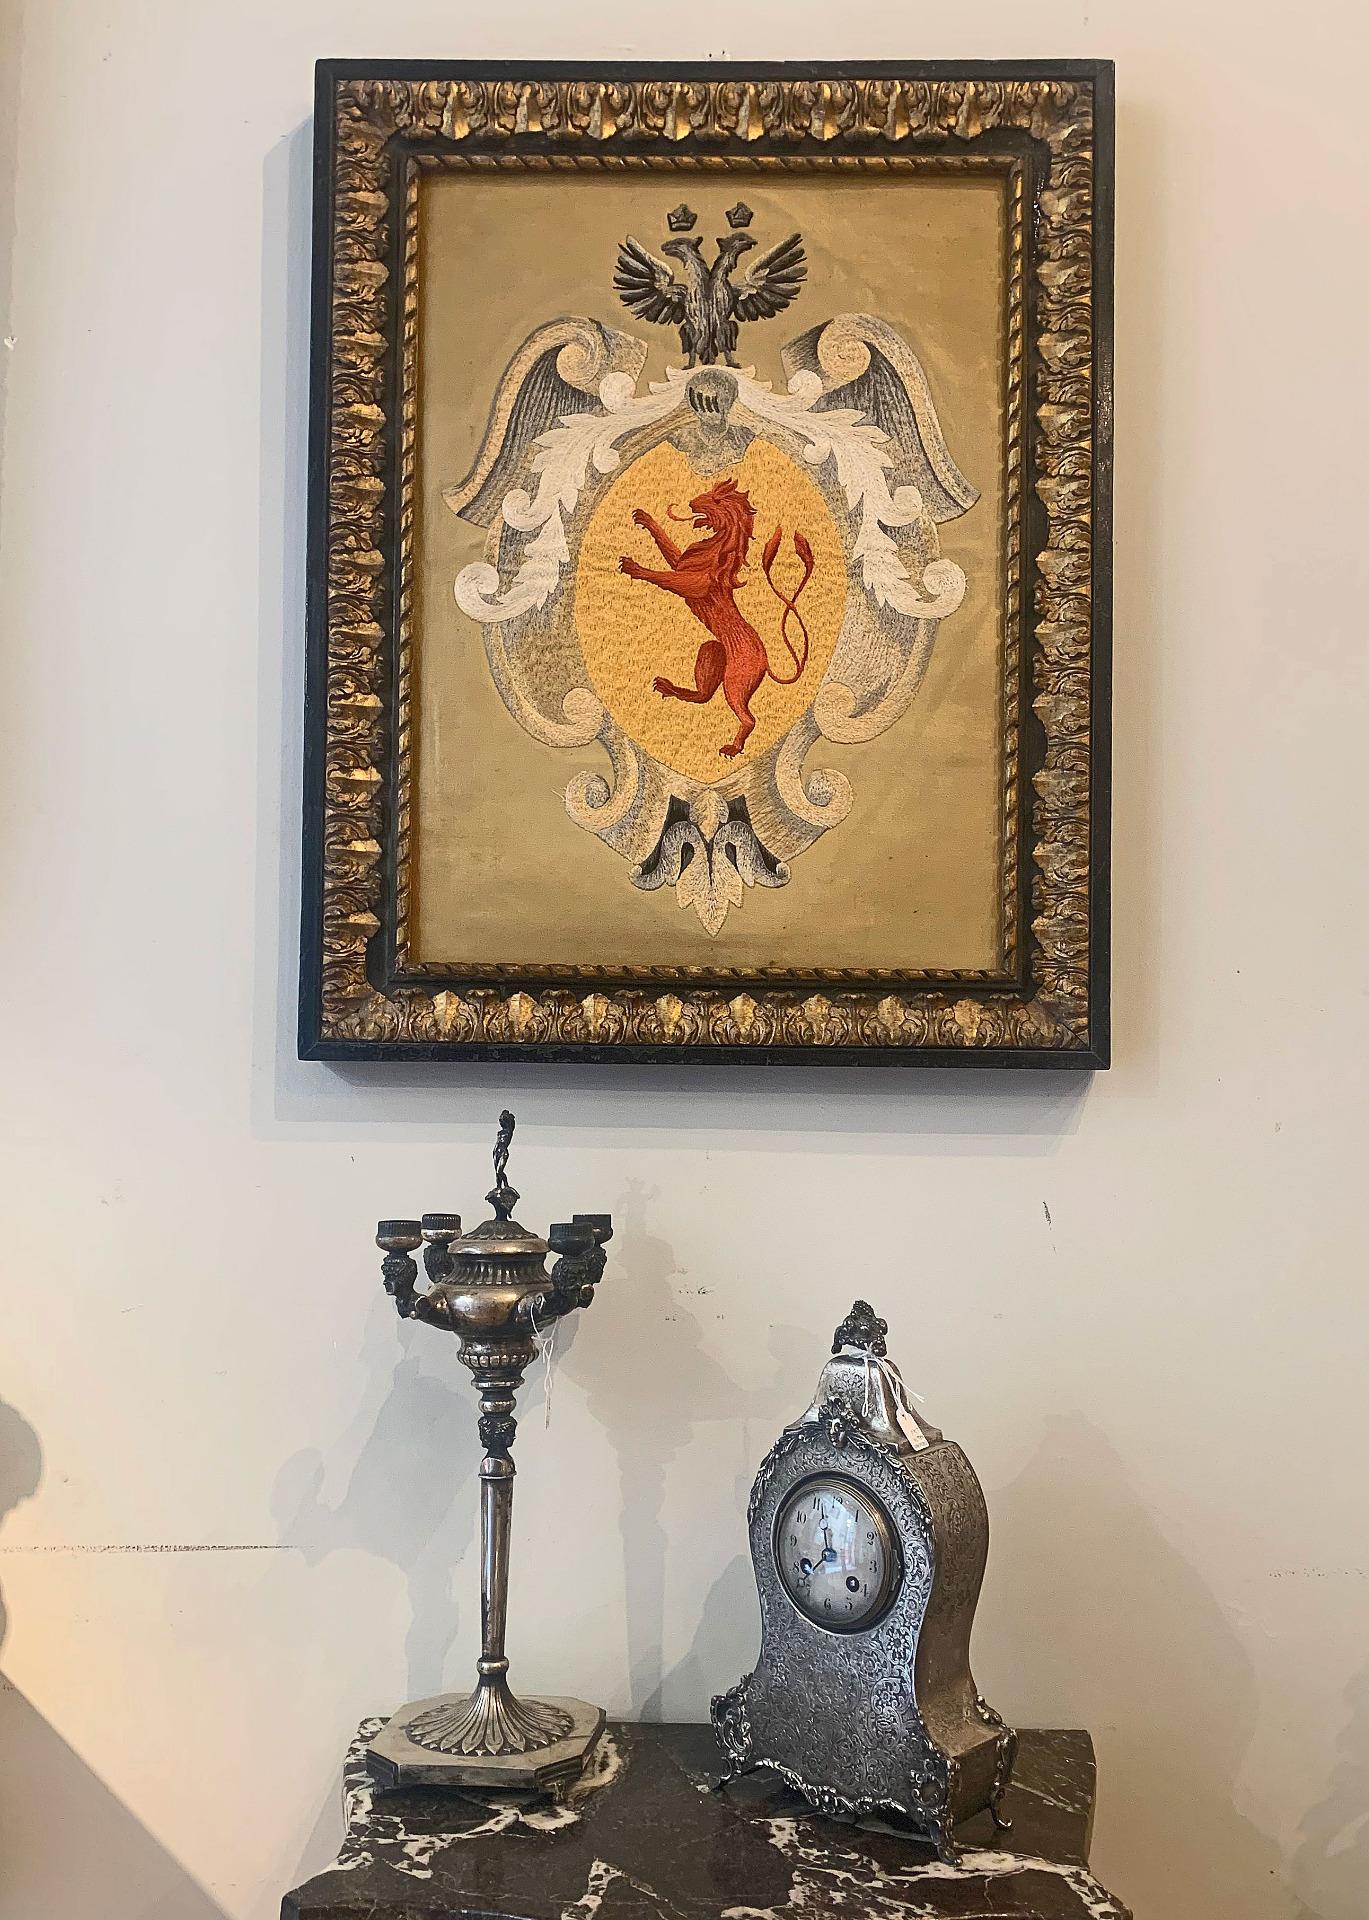 Seidenfadenstickerei auf Samt, aufgebracht auf eine Tannentafel, die das Wappen der Familie Sebregondi, eines Florentiner Adelsgeschlechts, darstellt.

Datiert auf die Zeit zwischen 1745 und 1788 (Quelle des Vorbesitzers), in einem Coeval-Rahmen aus